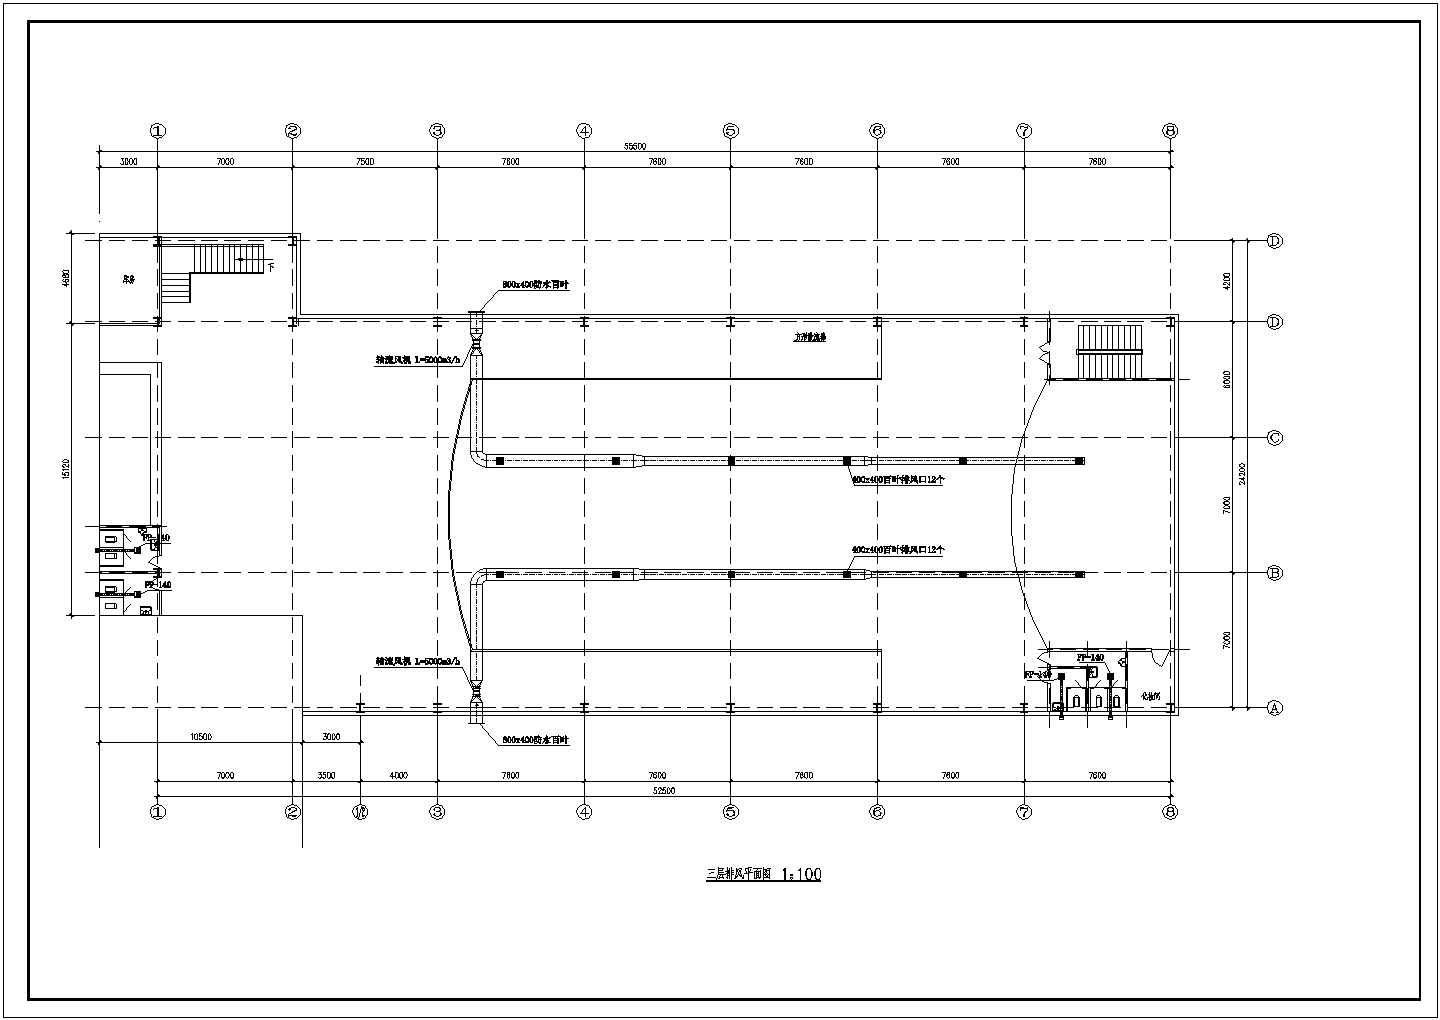 娱乐场所技改项目空调系统设计施工图